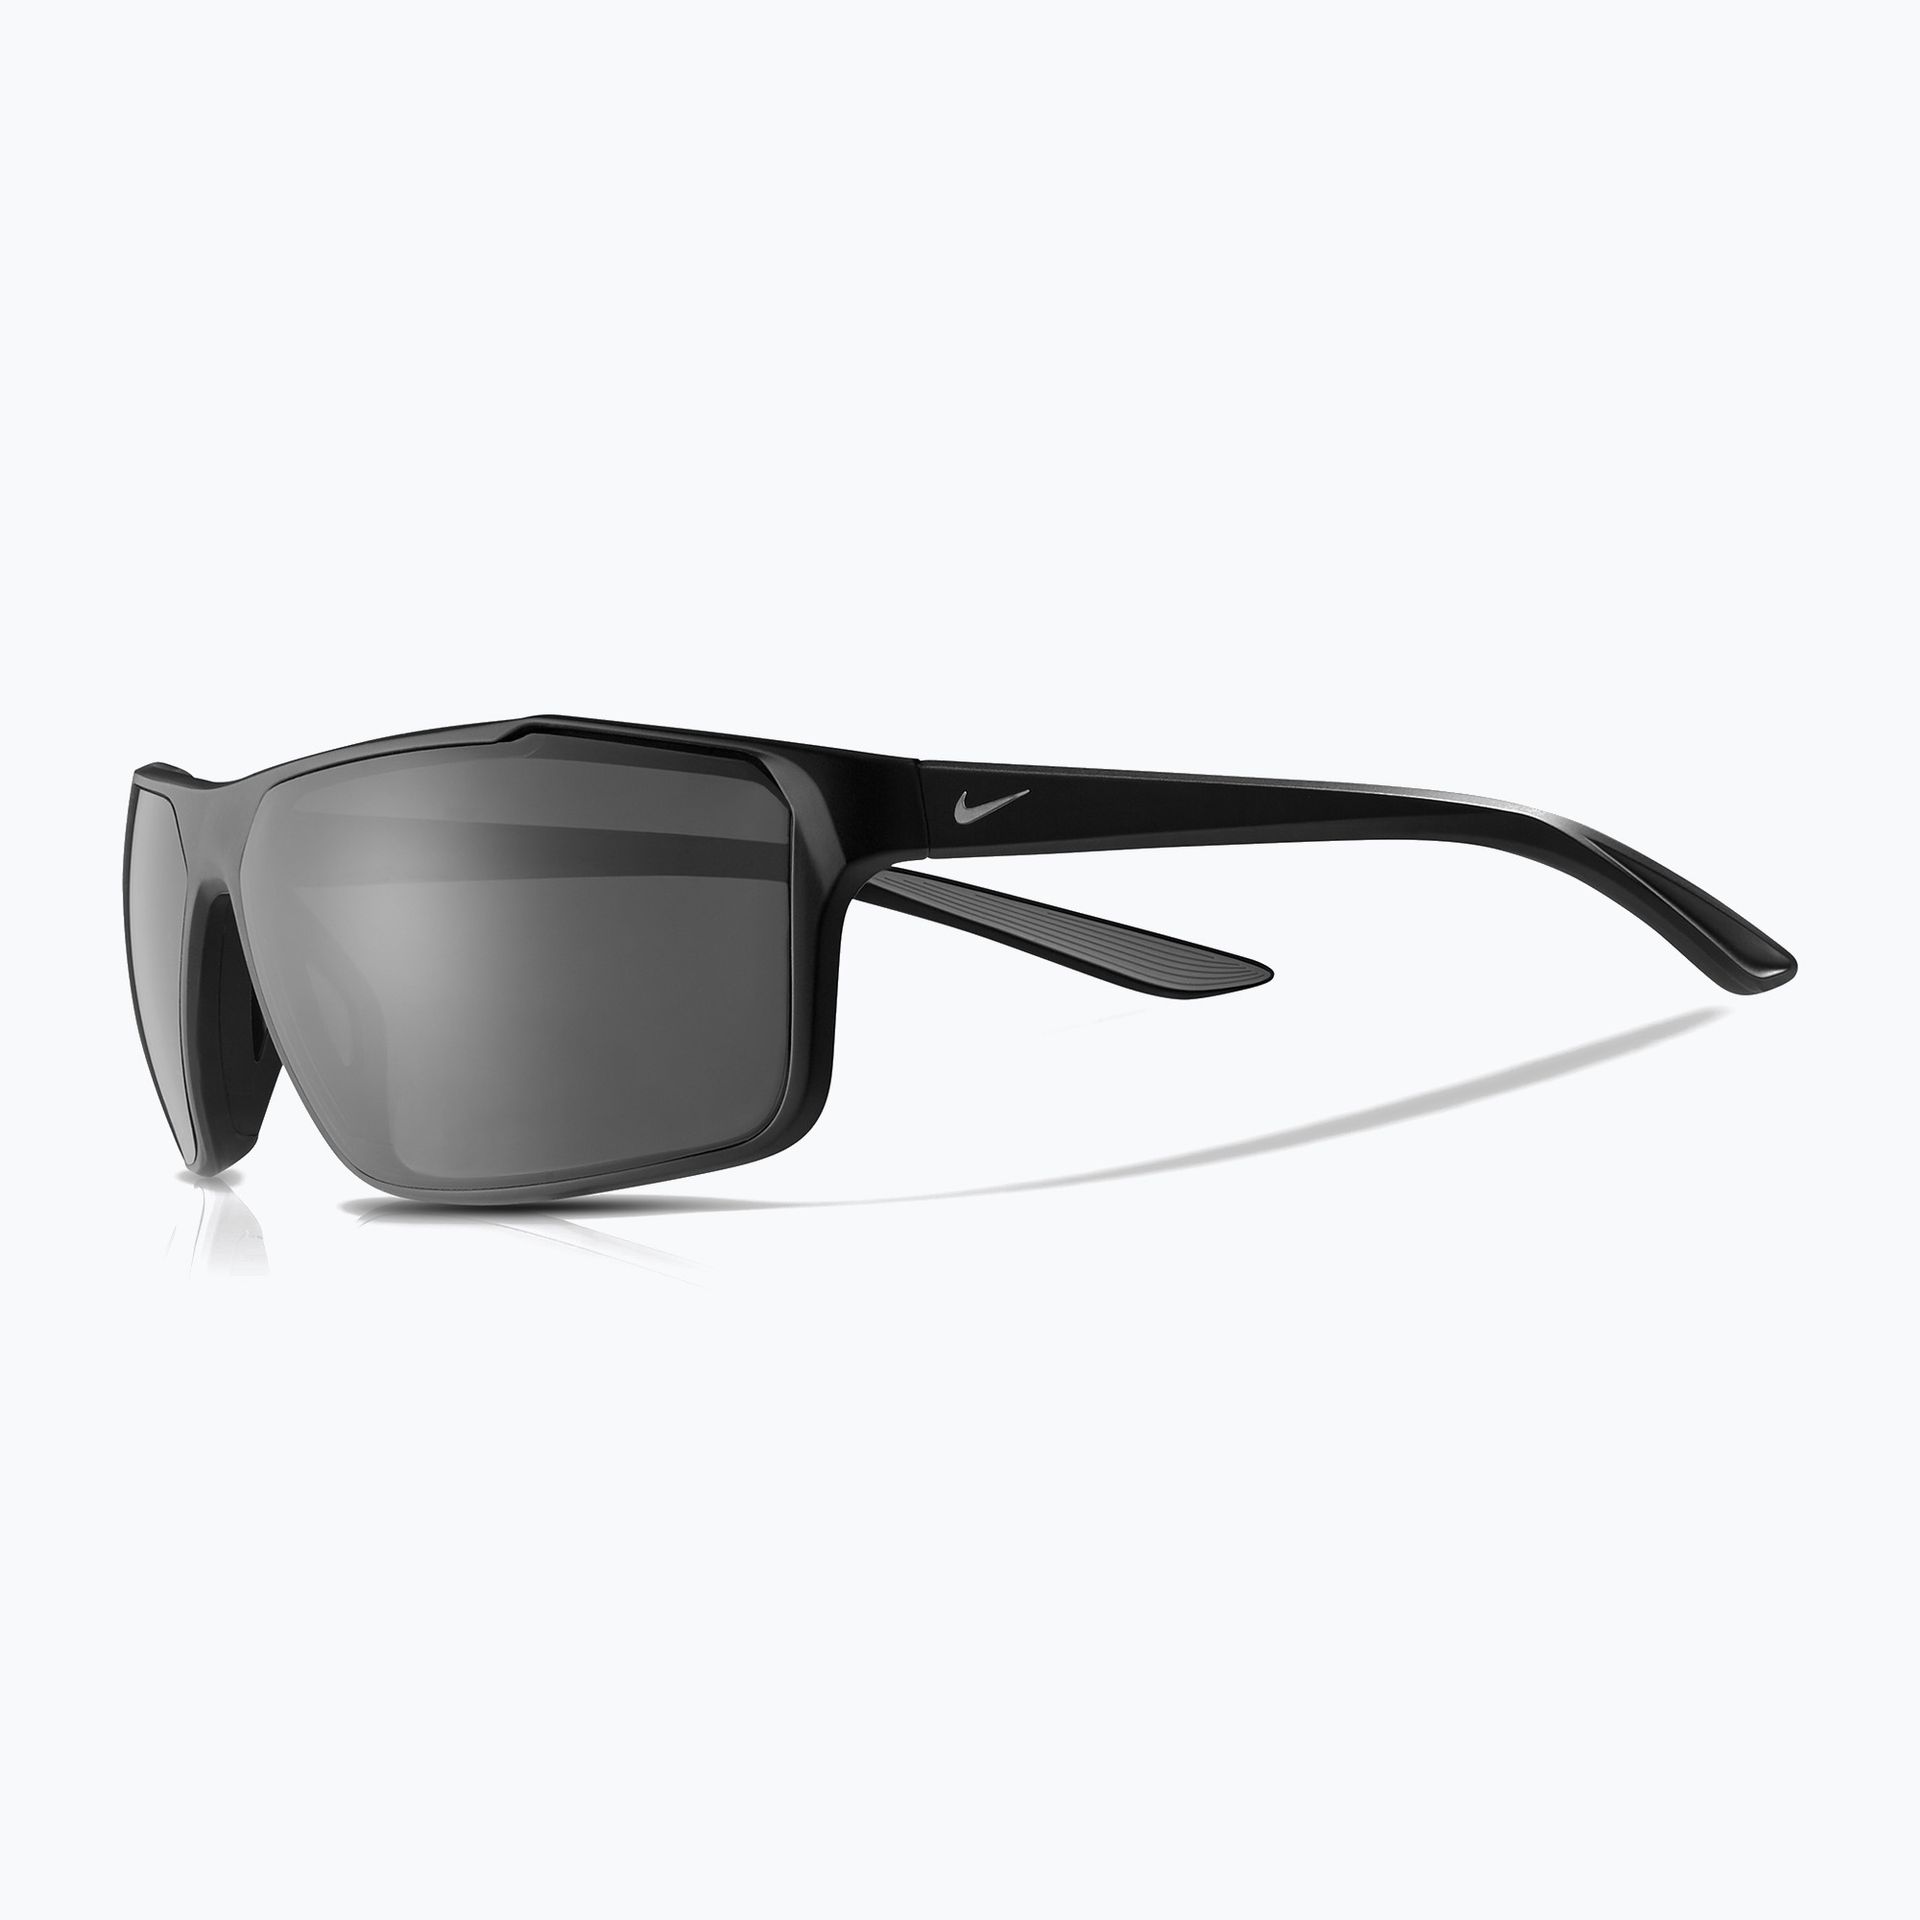 Okulary przeciwsłoneczne męskie Nike Windstorm matte black/silver/polar grey | WYSYŁKA W 24H | 30 DNI NA ZWROT